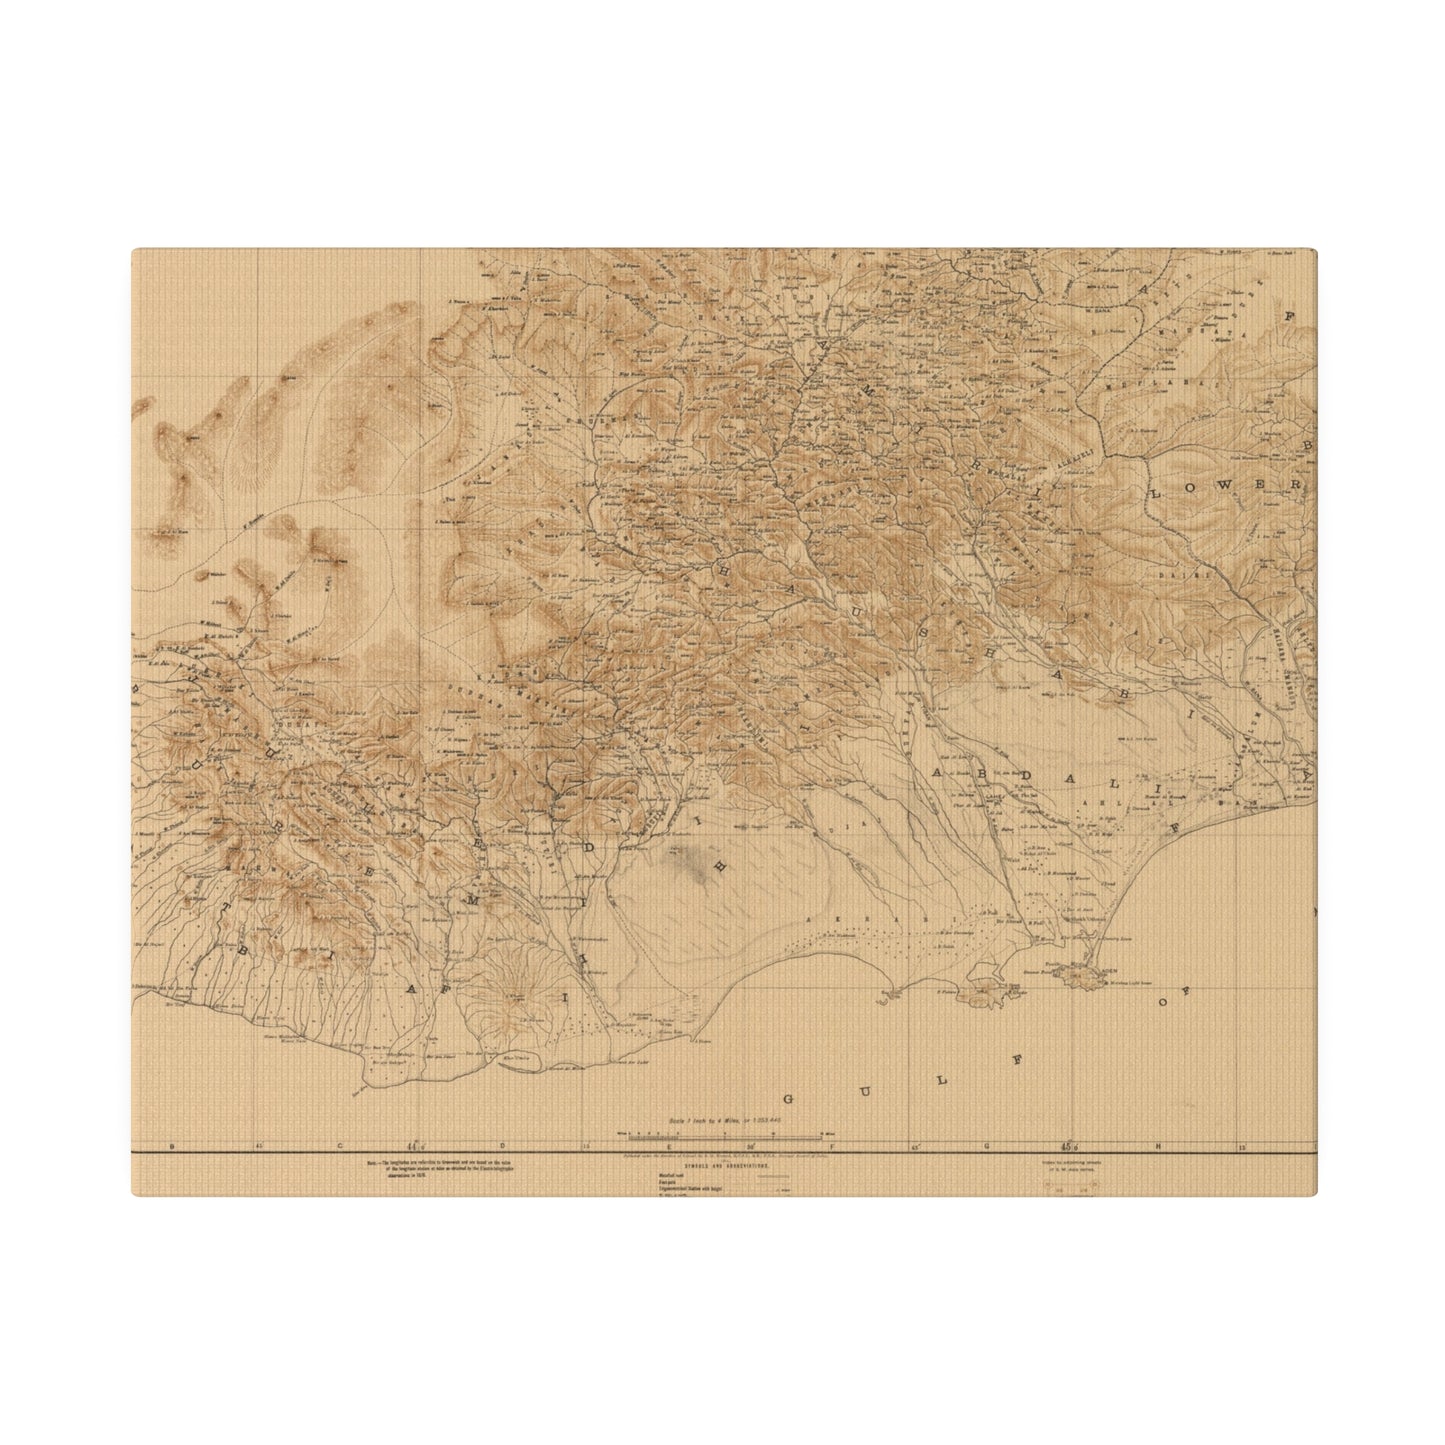 Aden Protectorate, Arabian Peninsula 1914